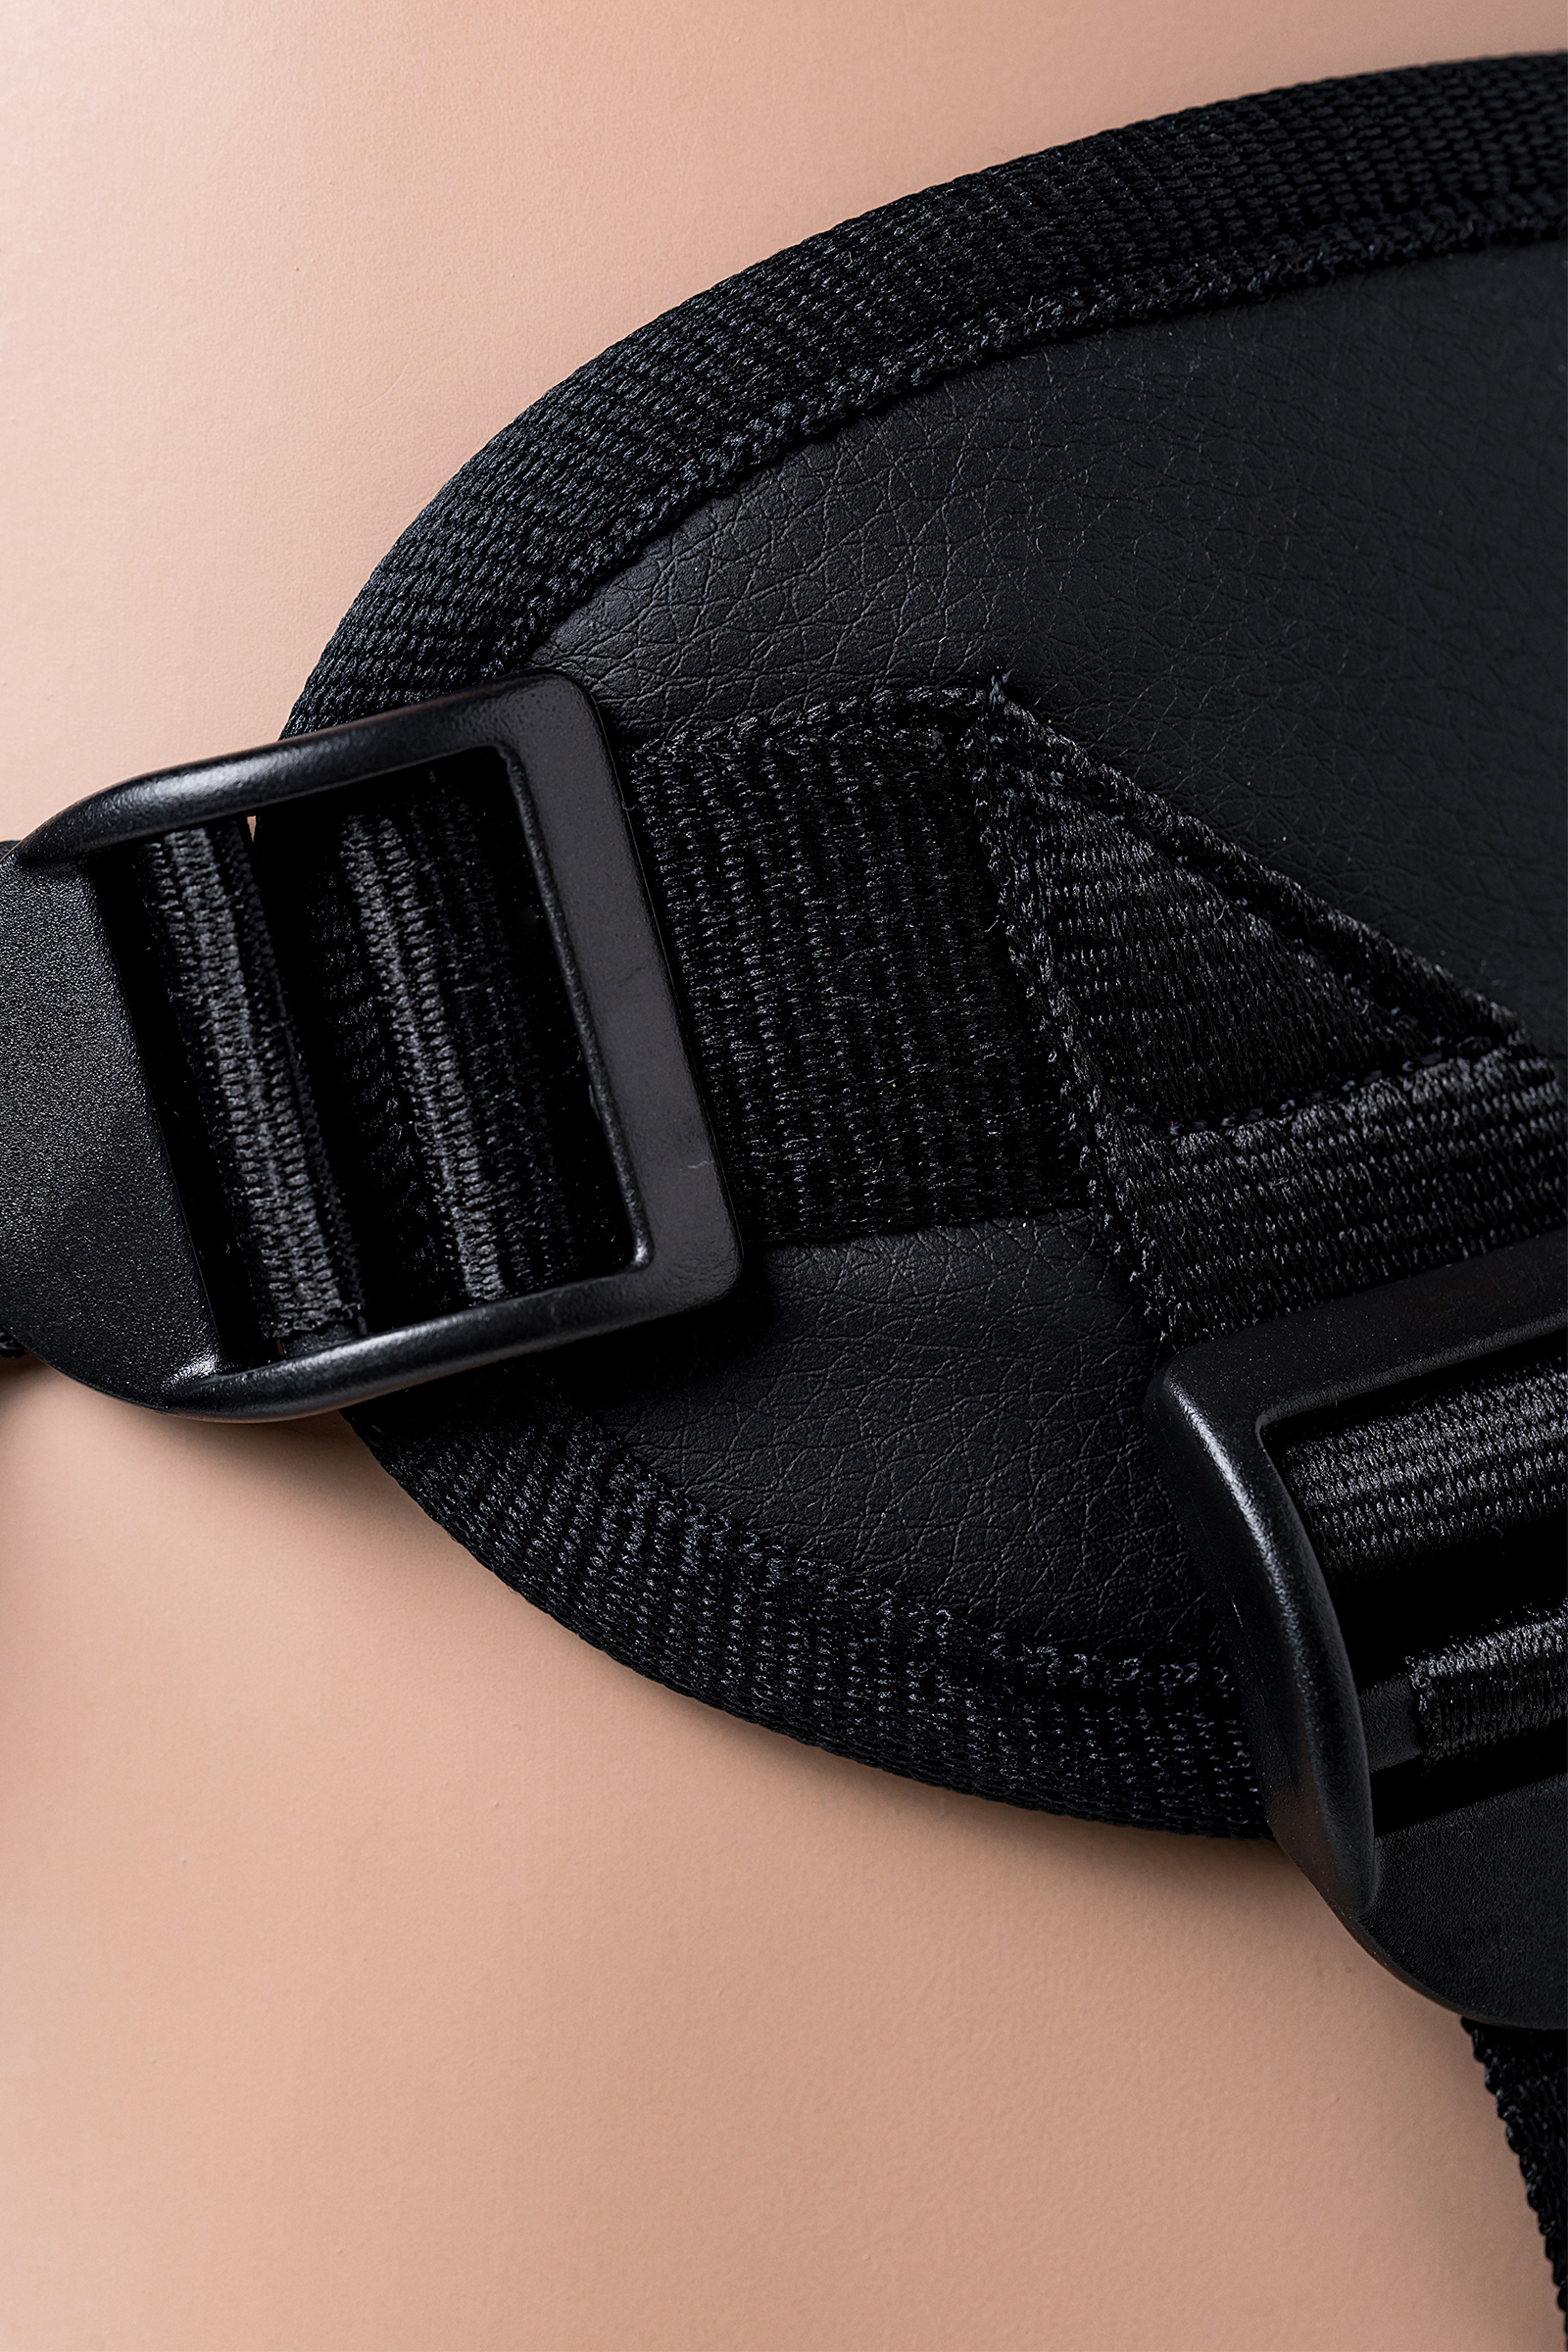 Страпон LoveToy с поясом Harness, с 2 насадками, реалистичный, neoskin, телесный, 18 см. Фото N7